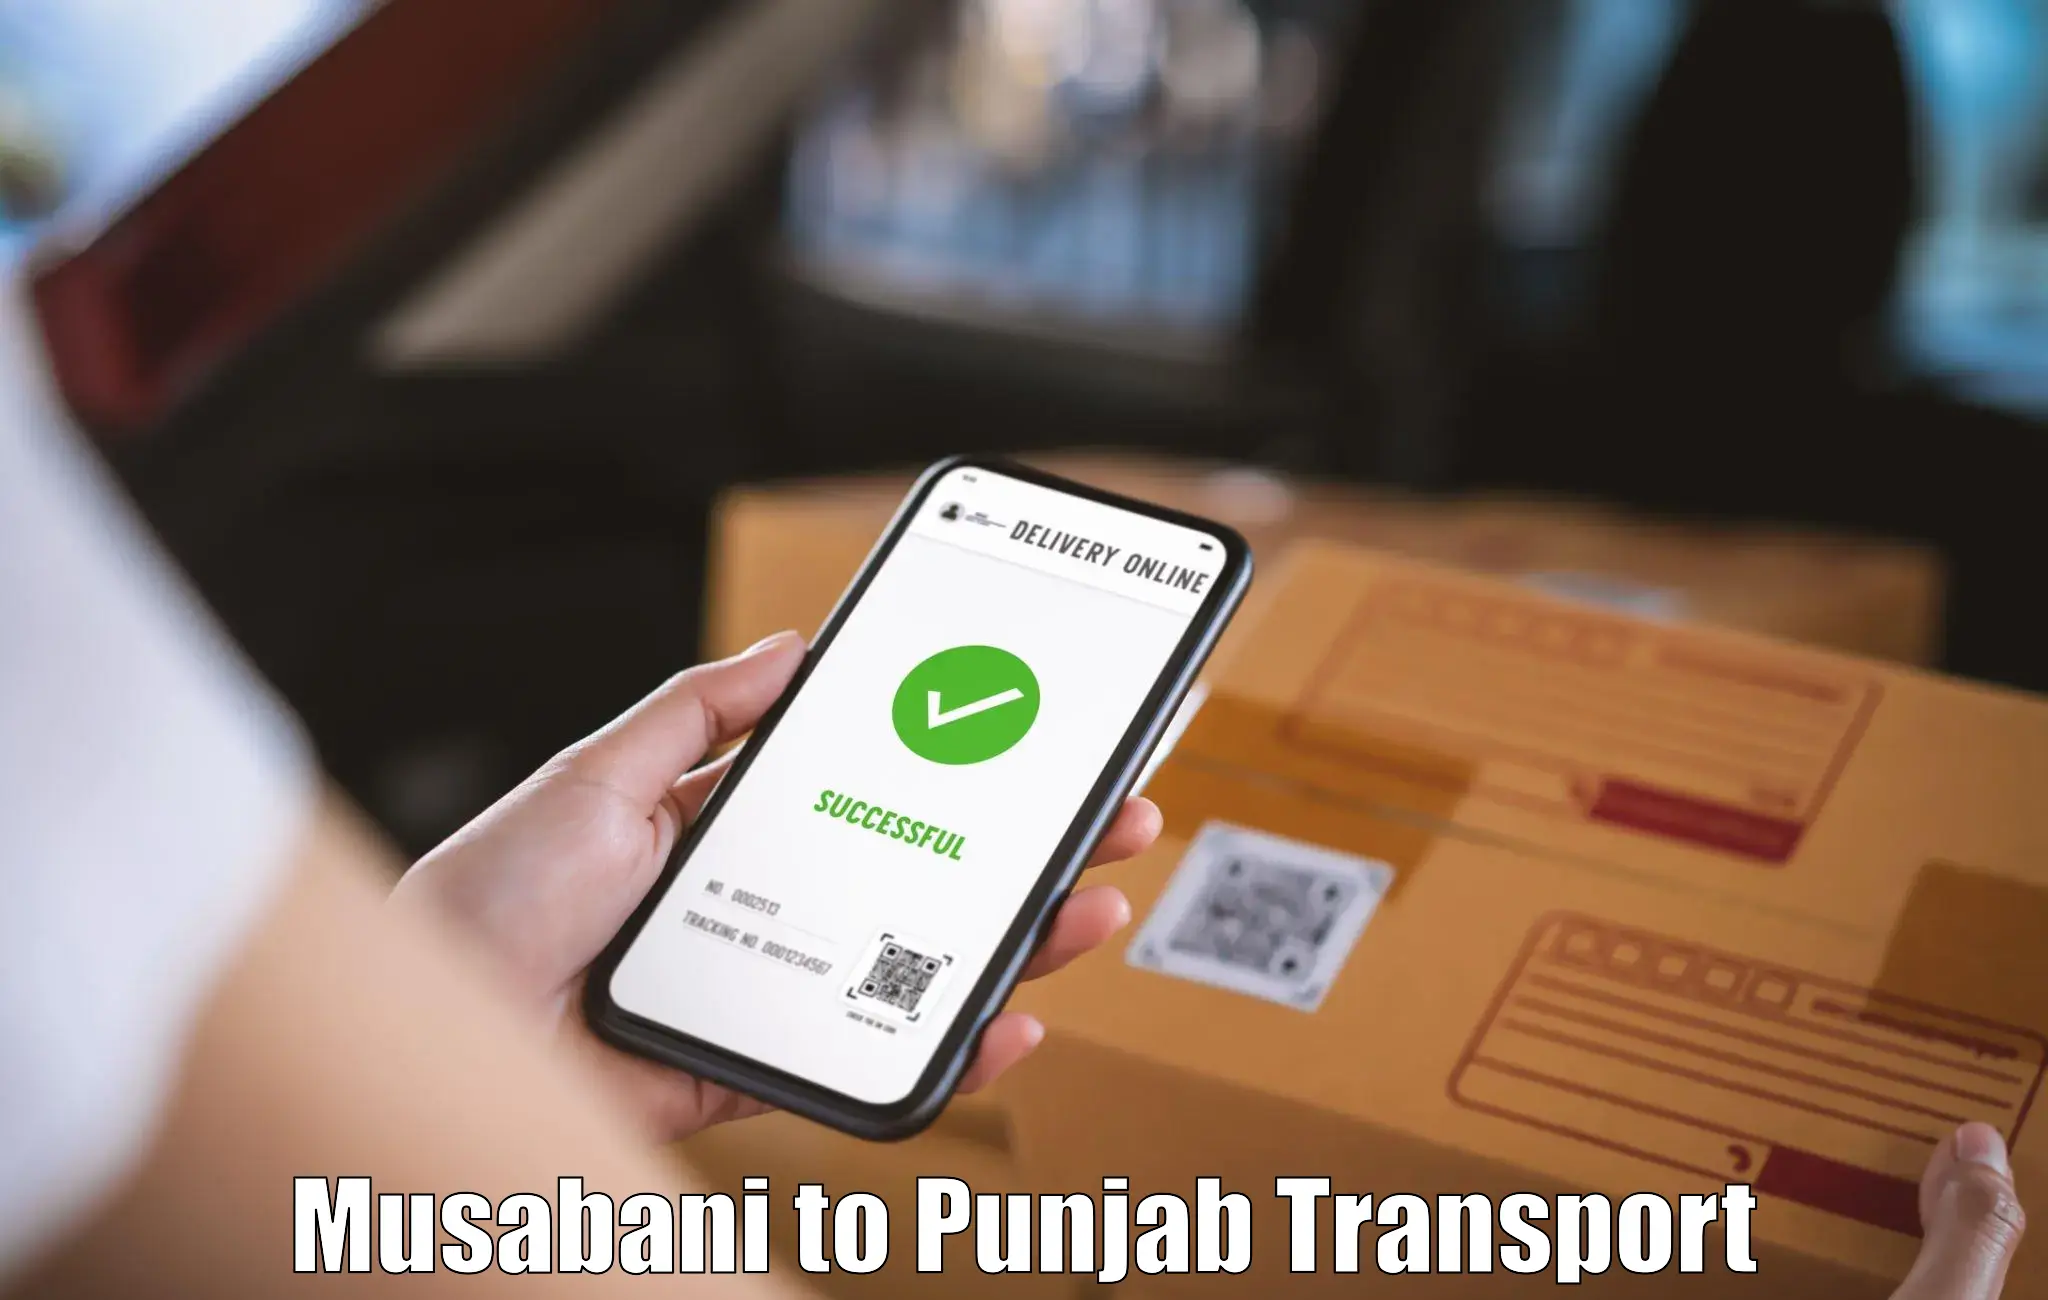 Online transport booking Musabani to Zirakpur